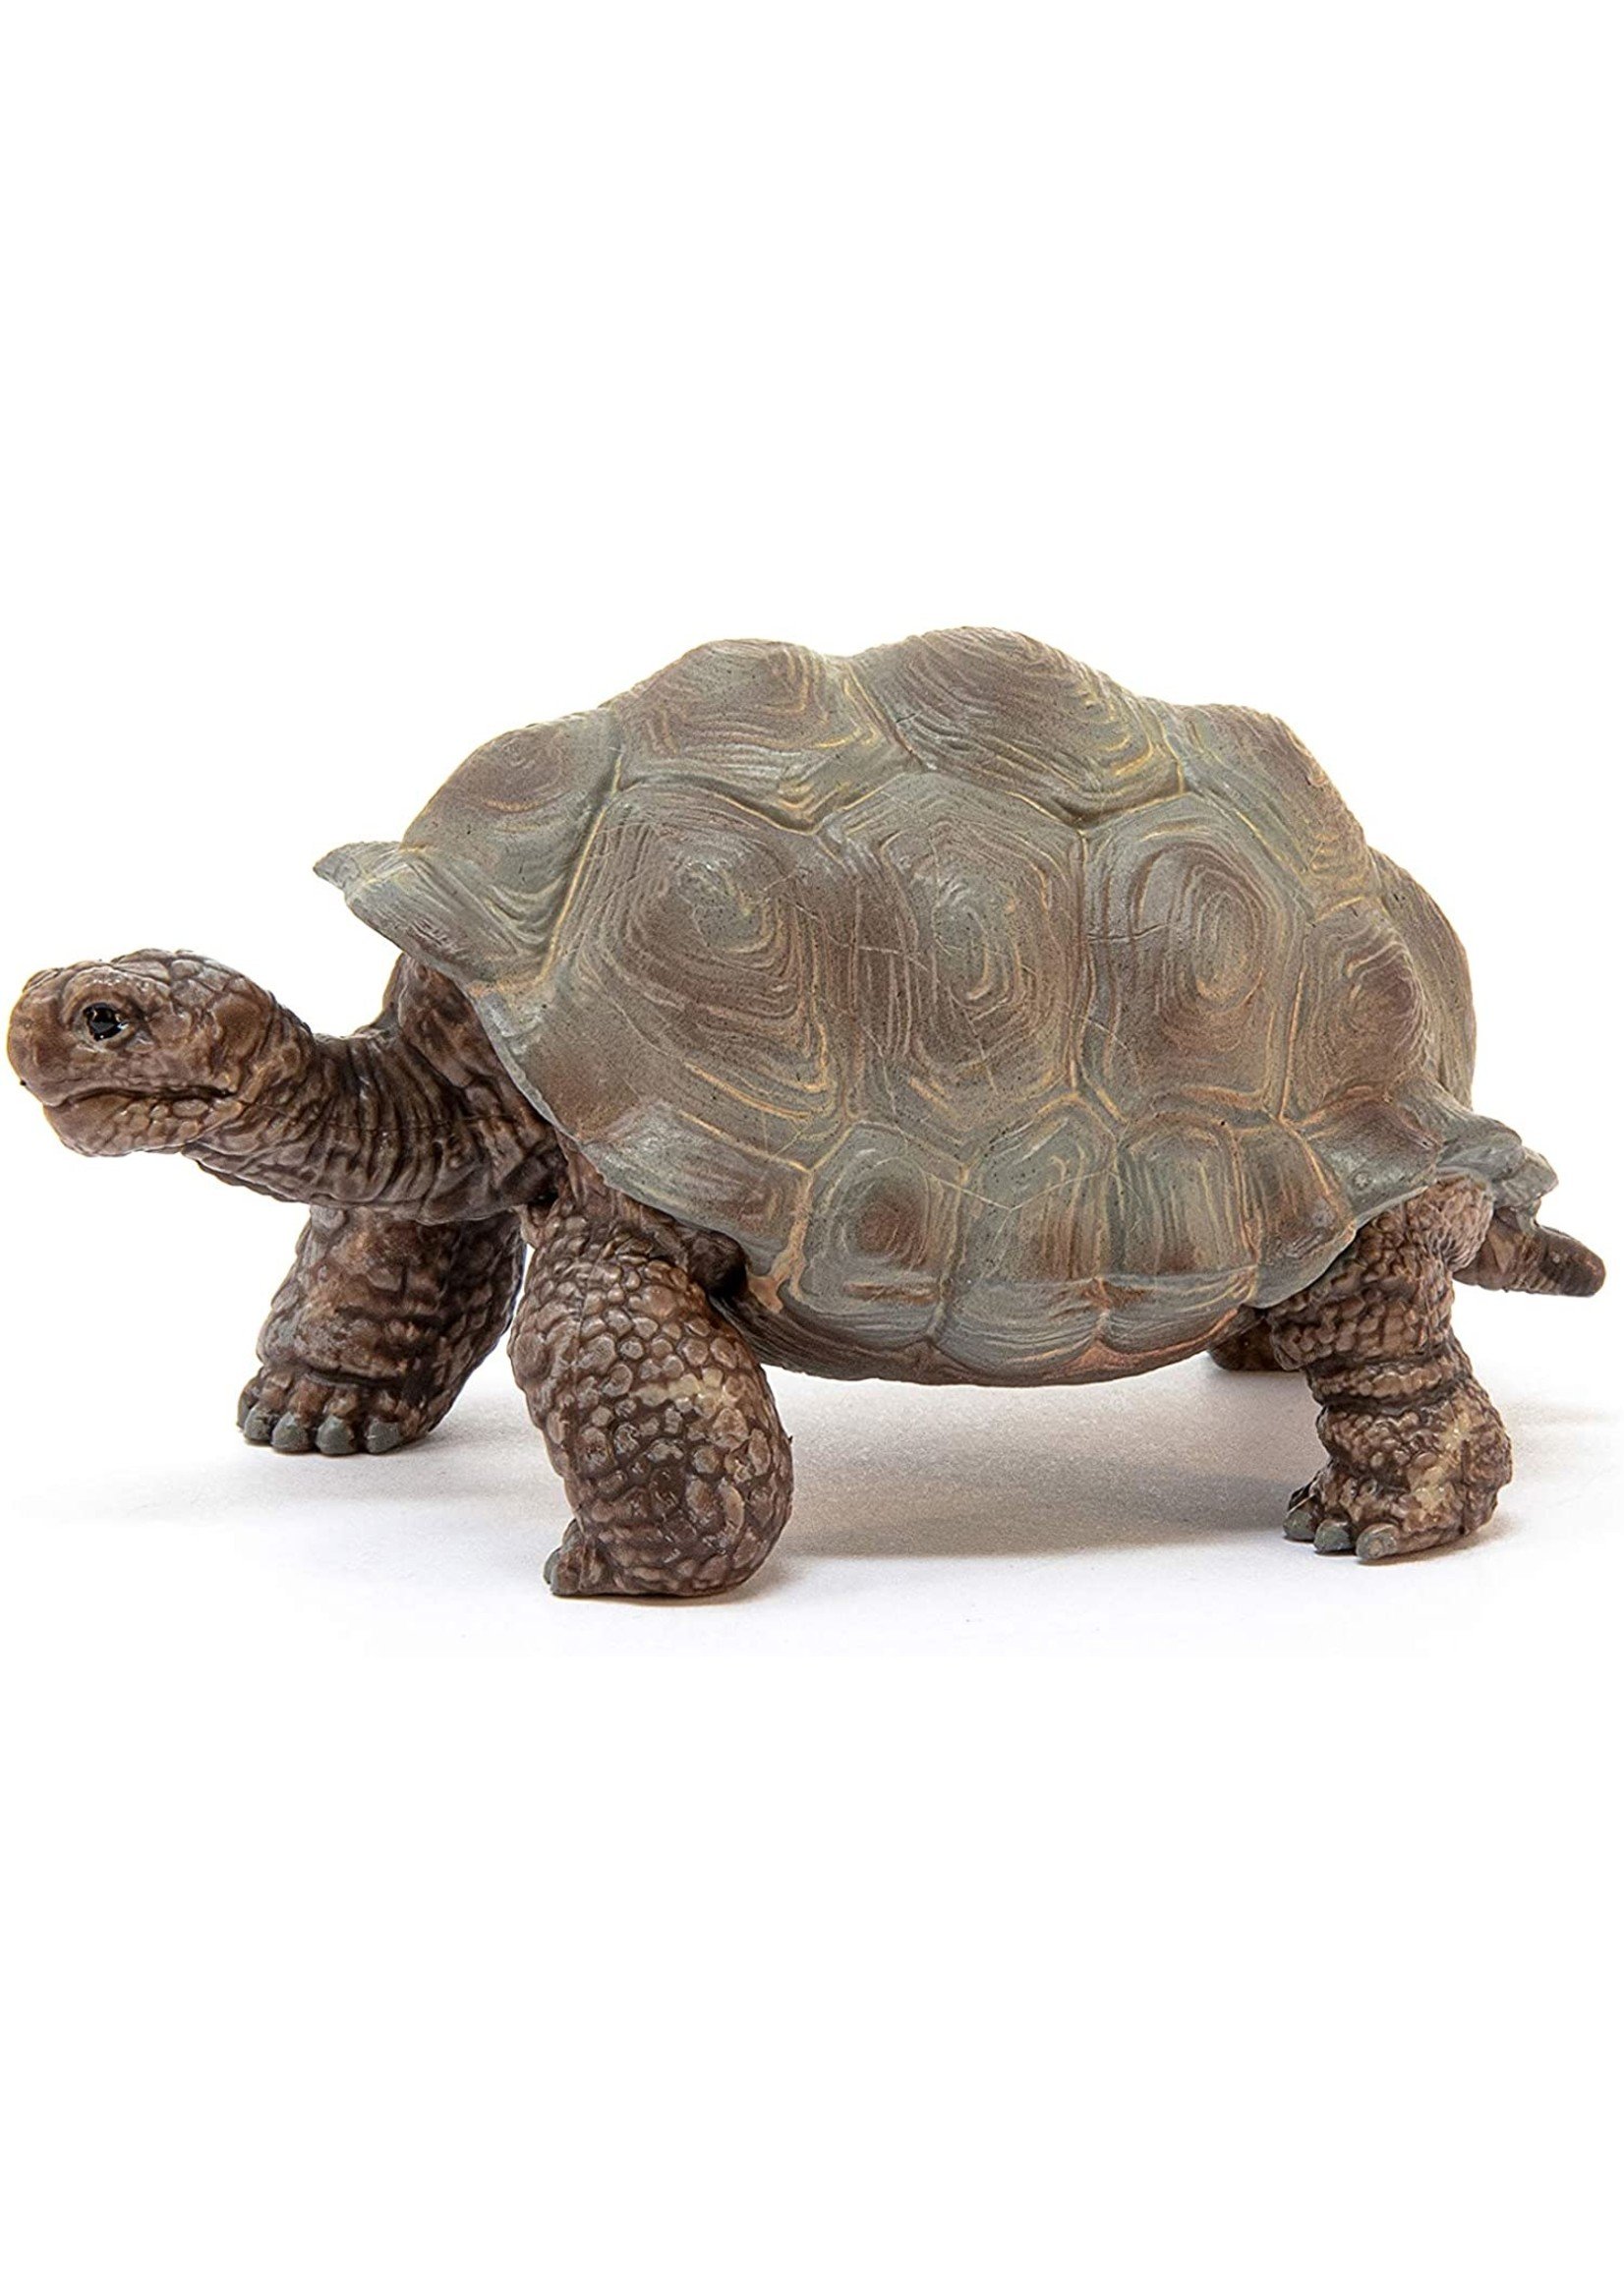 Schleich 14824 - Giant Tortoise